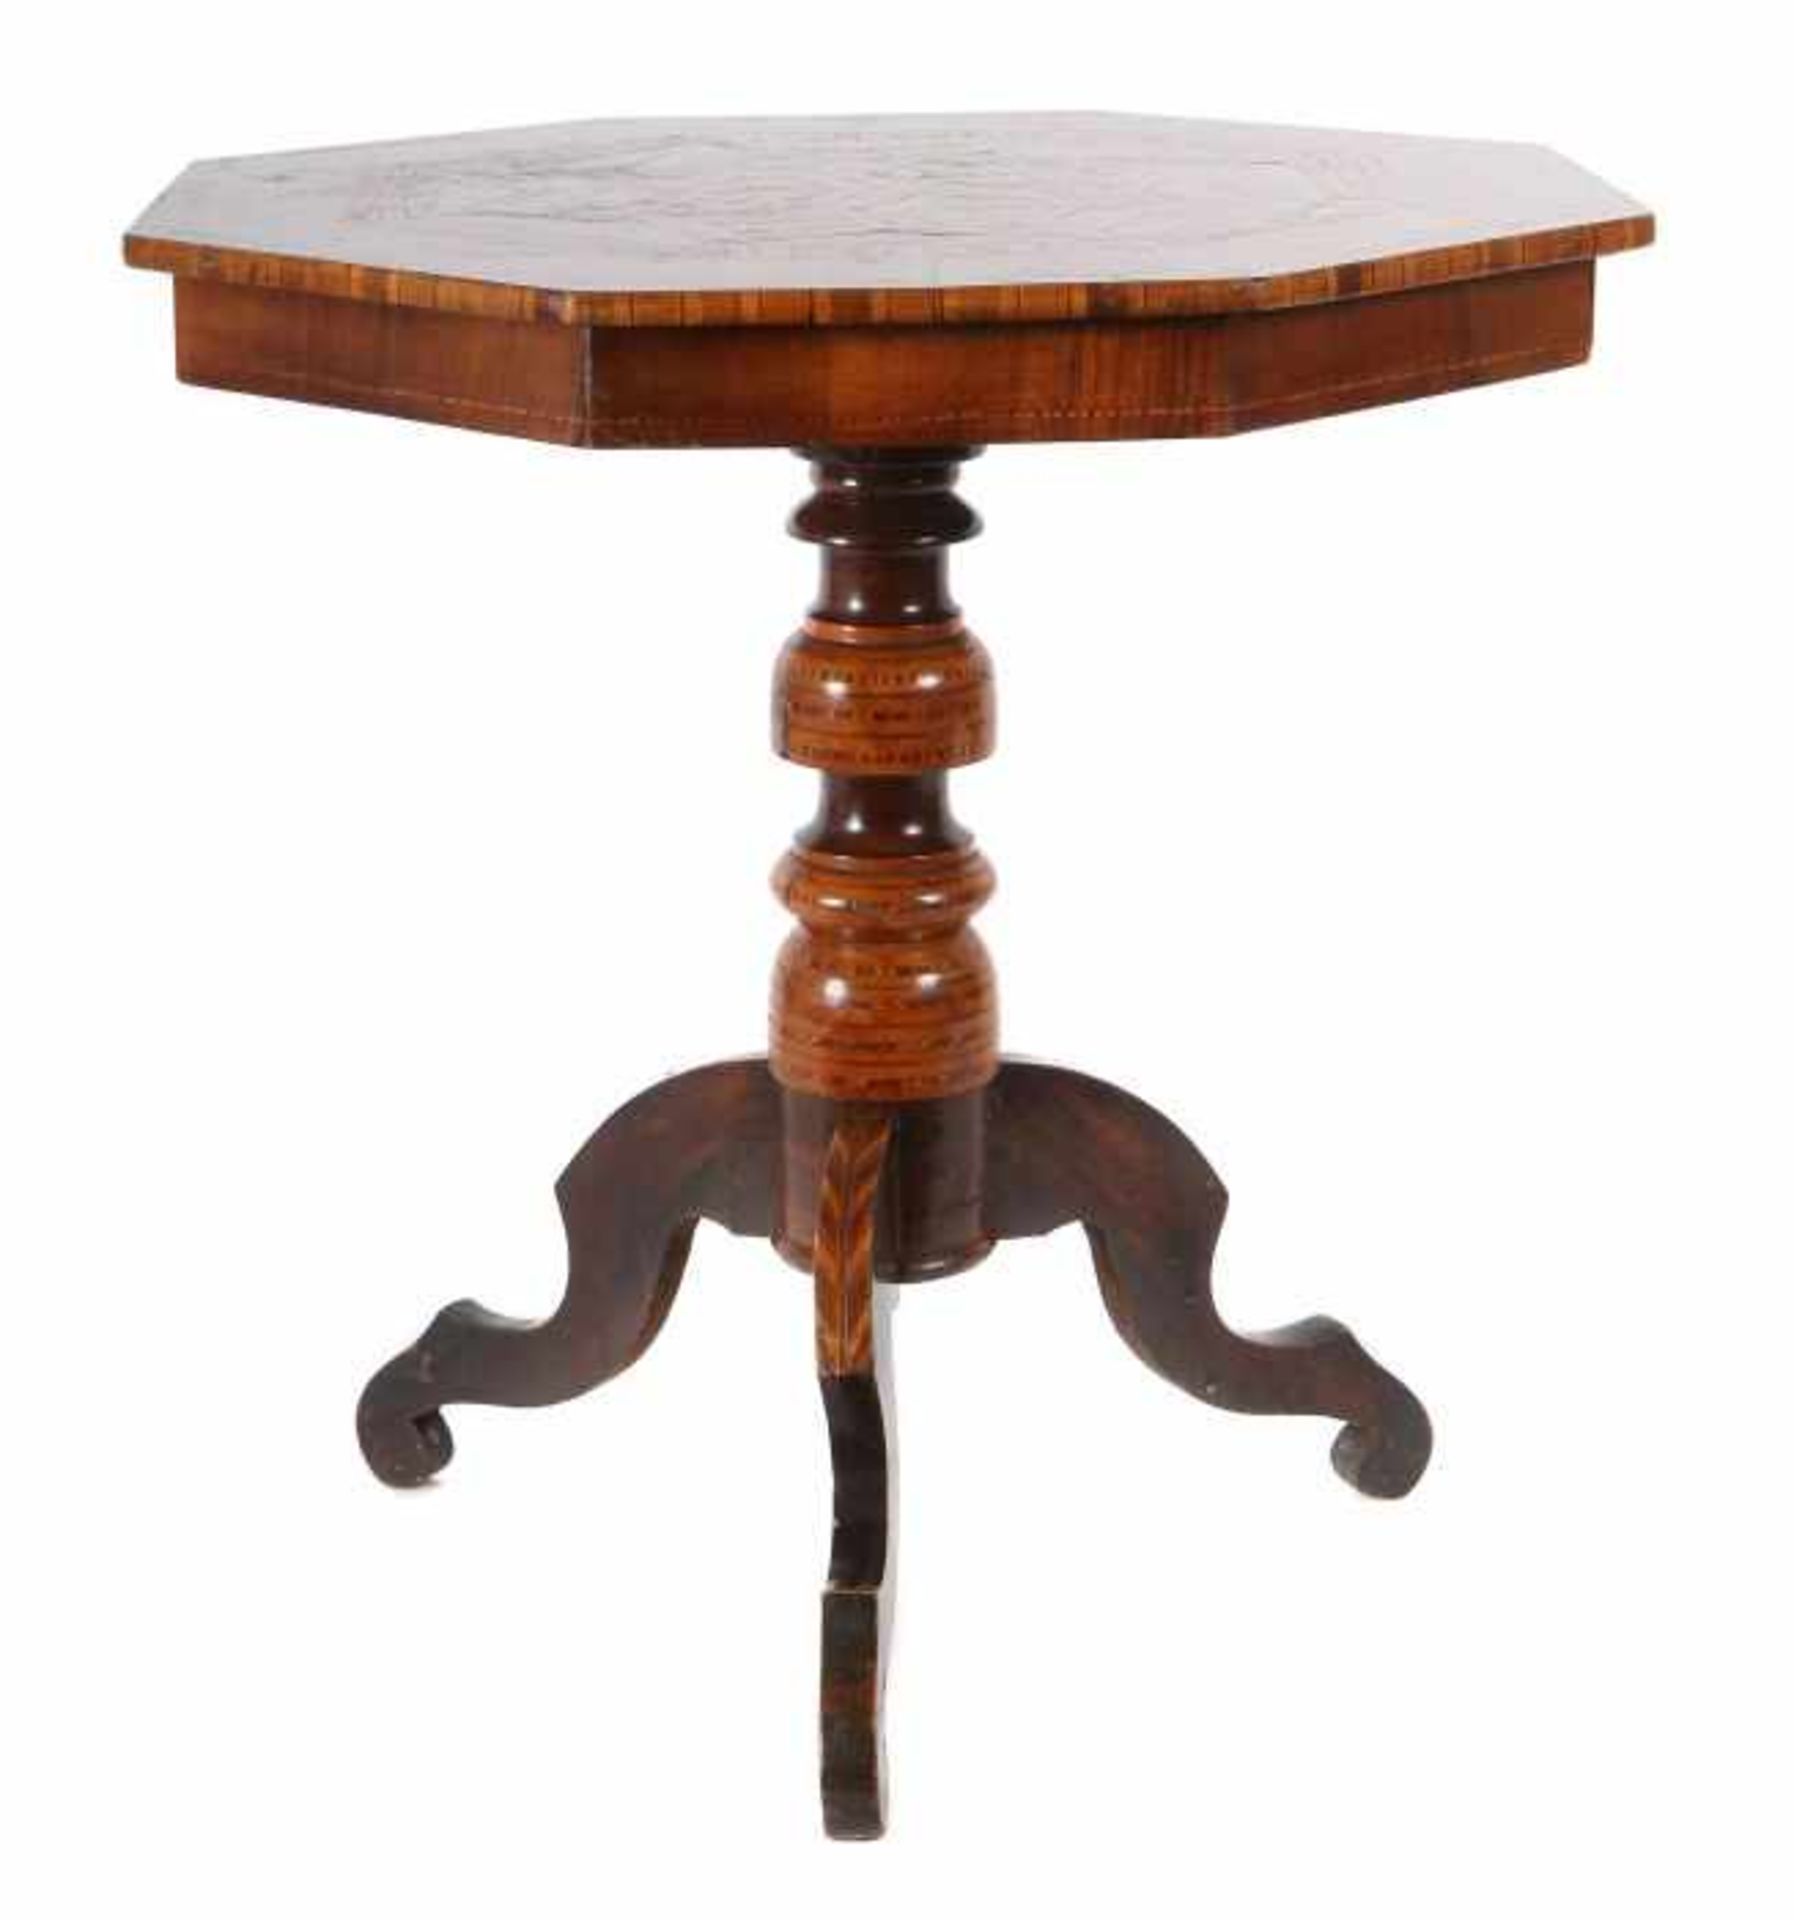 Kleiner Tisch mit Stern-Marketerie um 1850, Nussbaum u.a. Hölzer furniert, mit Einlagen verzierter